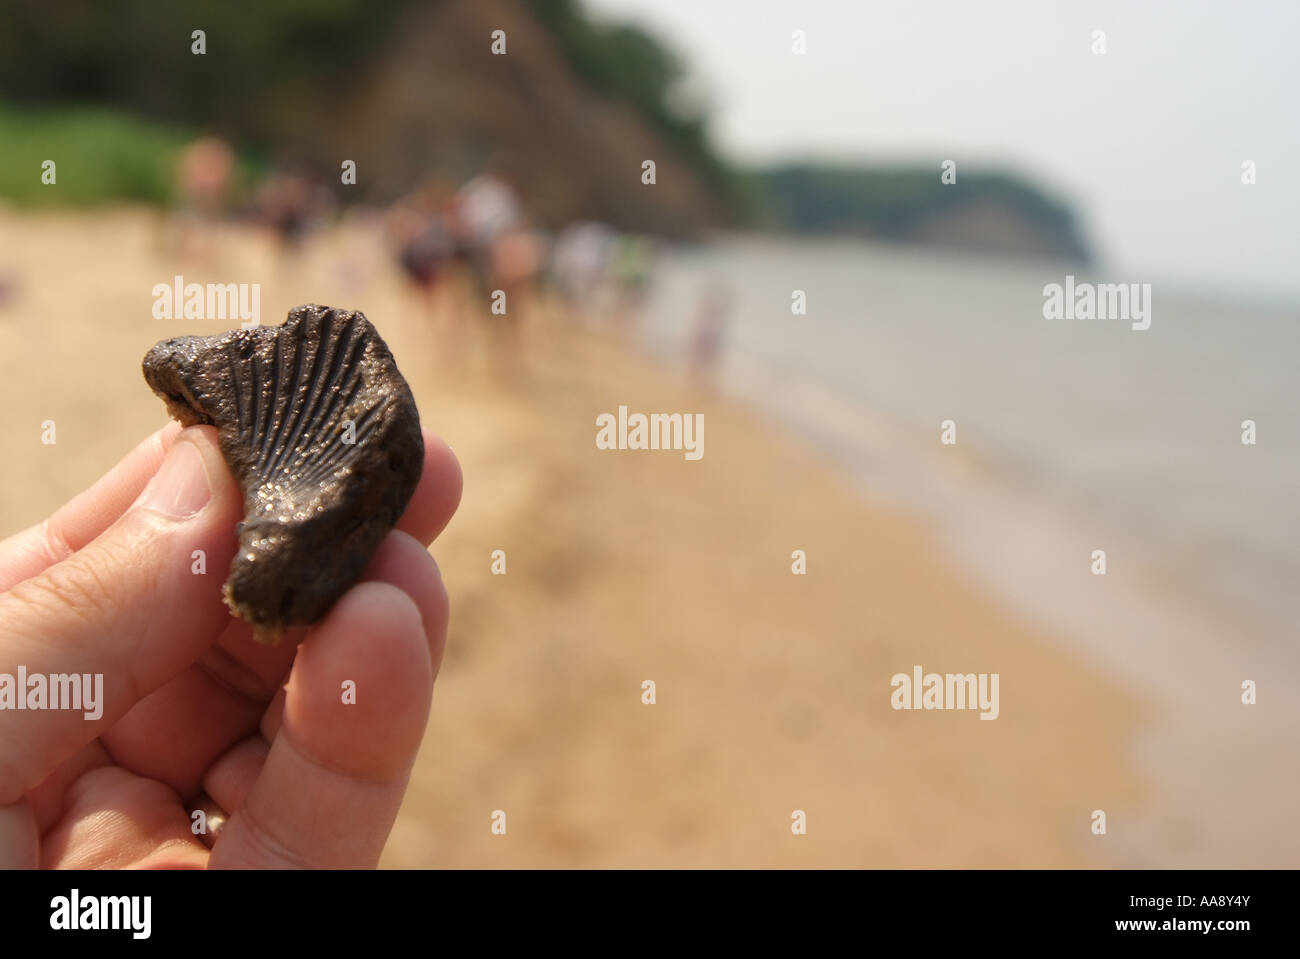 Estados Unidos Maryland Calvert Cliffs State Park una mano sostiene una concha fósil encontrado en la playa Foto de stock